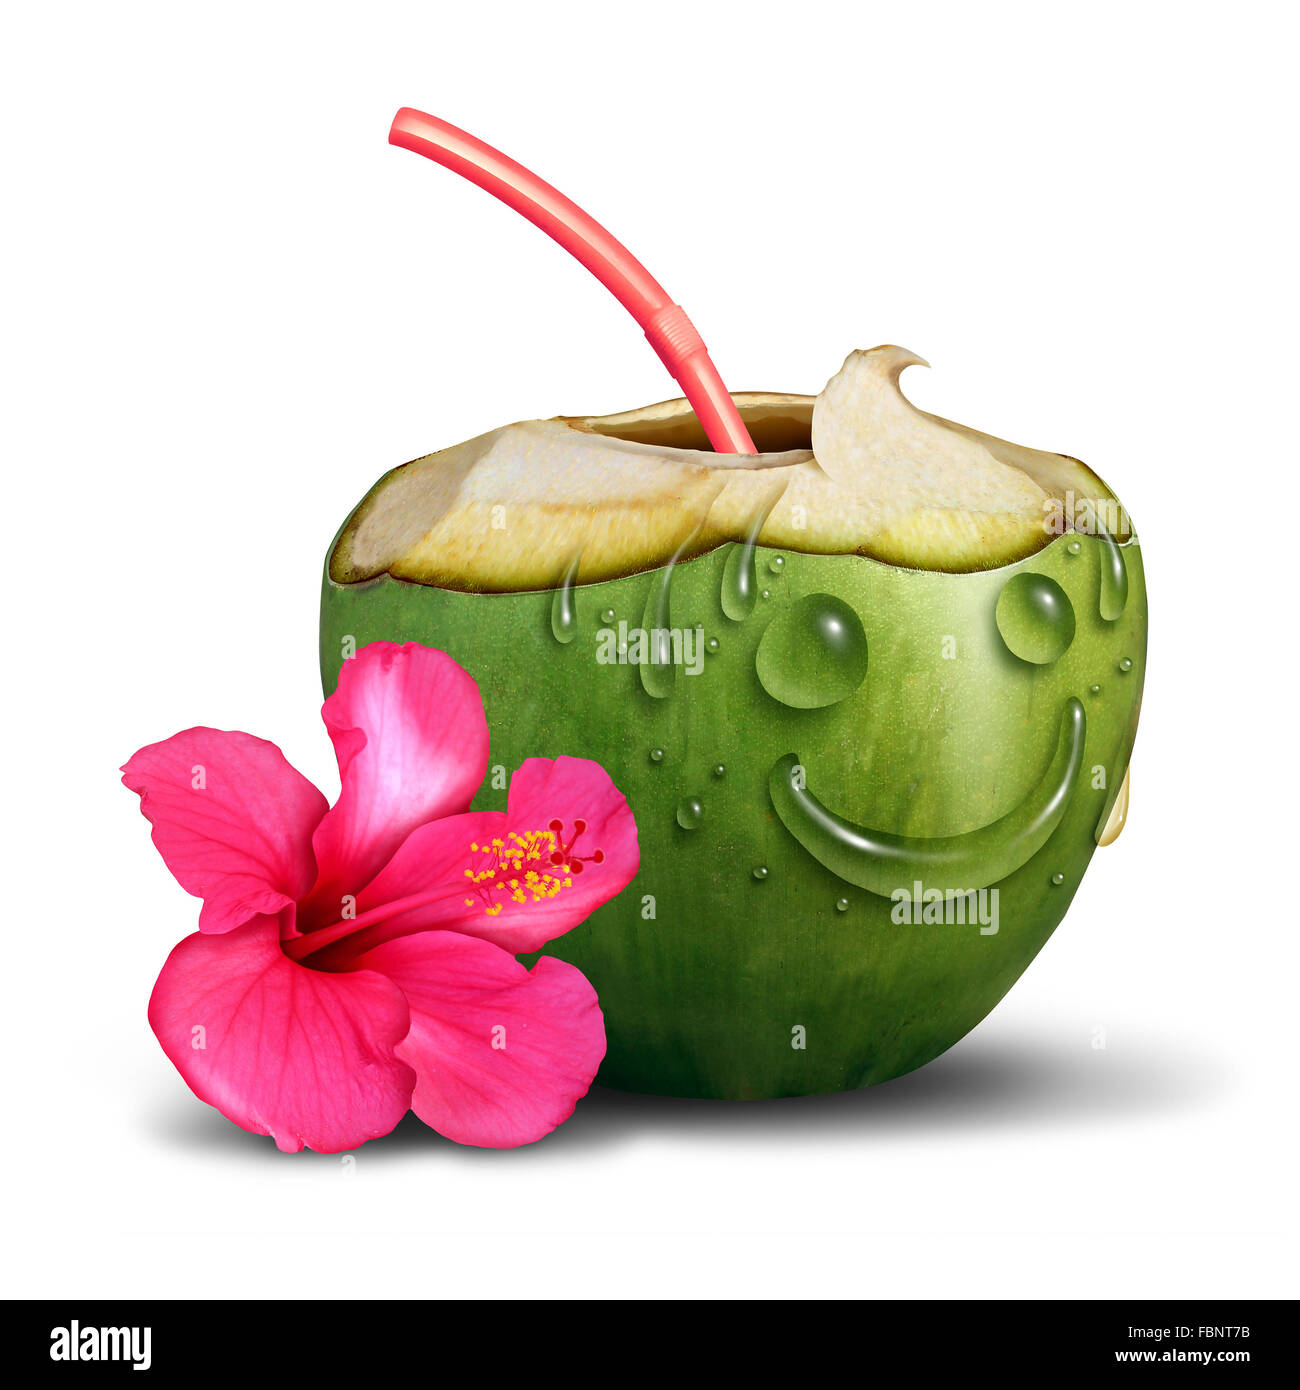 Happy drink tropicale nozione come un taglio fresco noce di cocco con un fiore e gocce di acqua conformata come una faccia sorridente come una vacanza relax simbolo e tempo libero ricreazione icona su uno sfondo bianco. Foto Stock